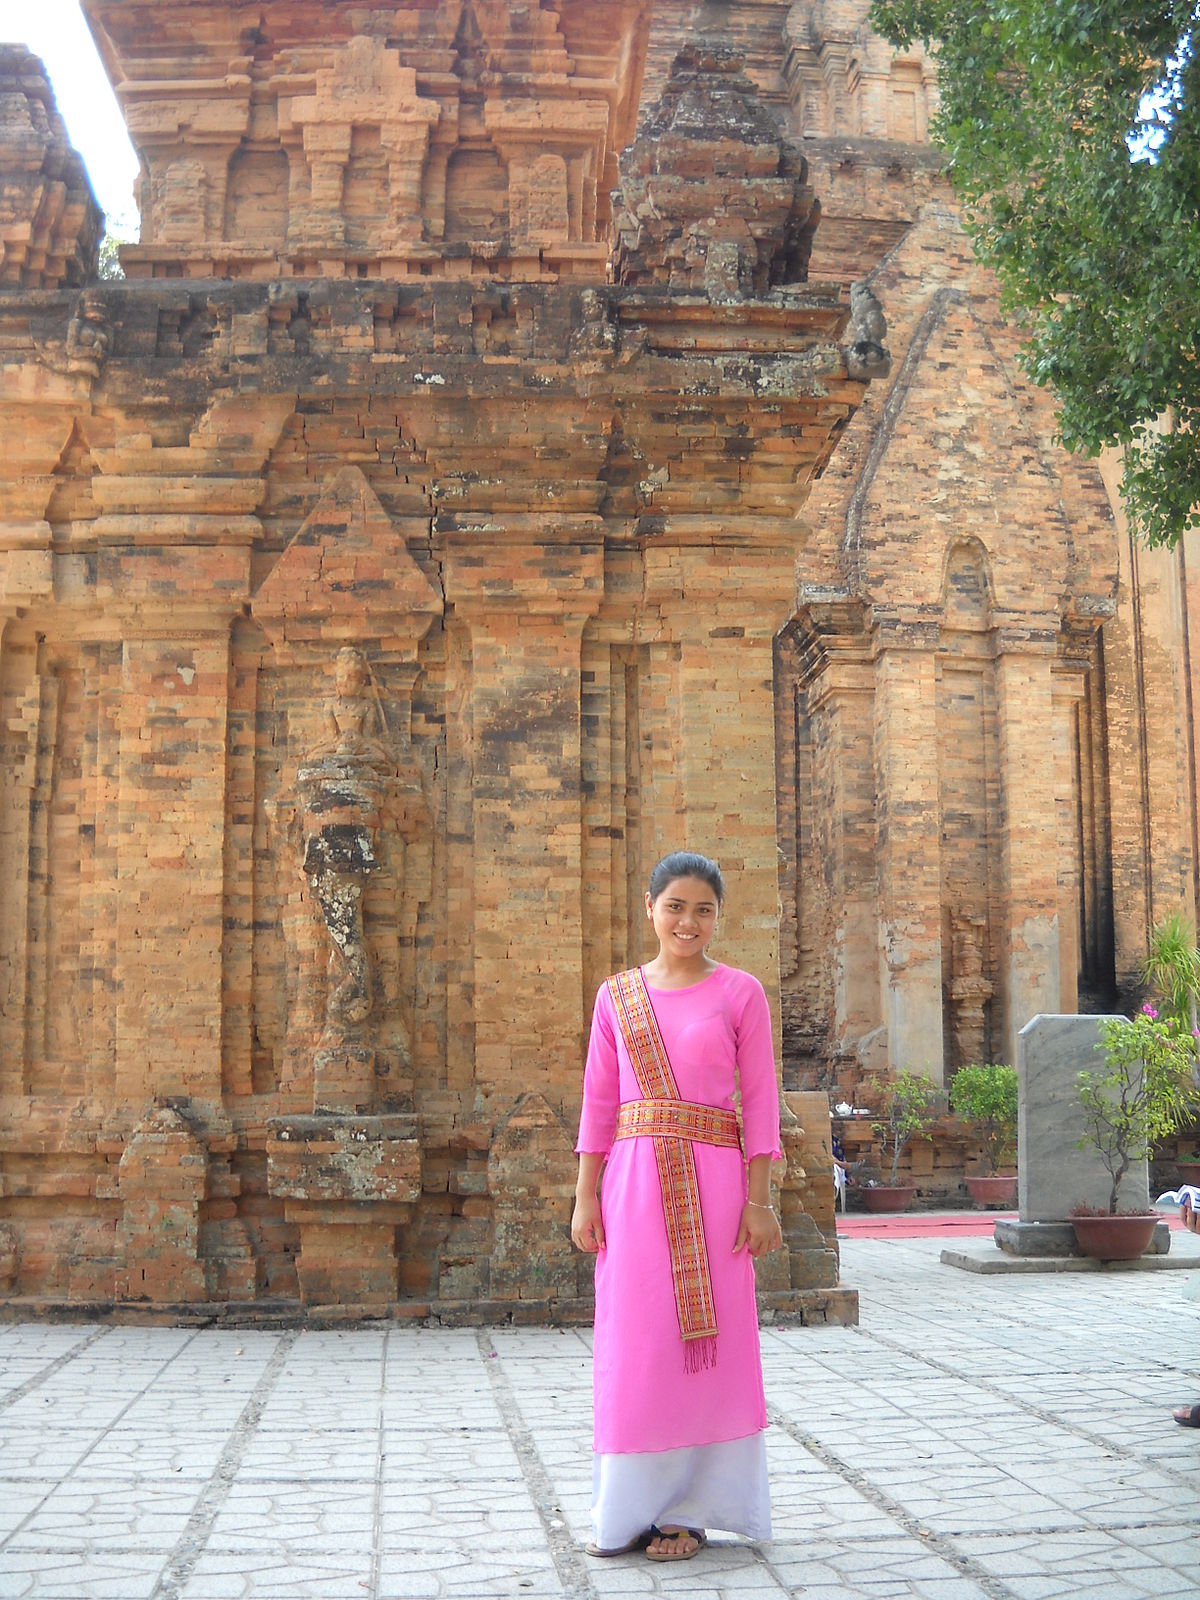 Khám phá nét đặc trưng về văn hóa và phong tục của người Chăm tại Campuchia, qua những hình ảnh về trang phục truyền thống, lễ hội và các nét độc đáo trong nền văn hóa của cộng đồng này.